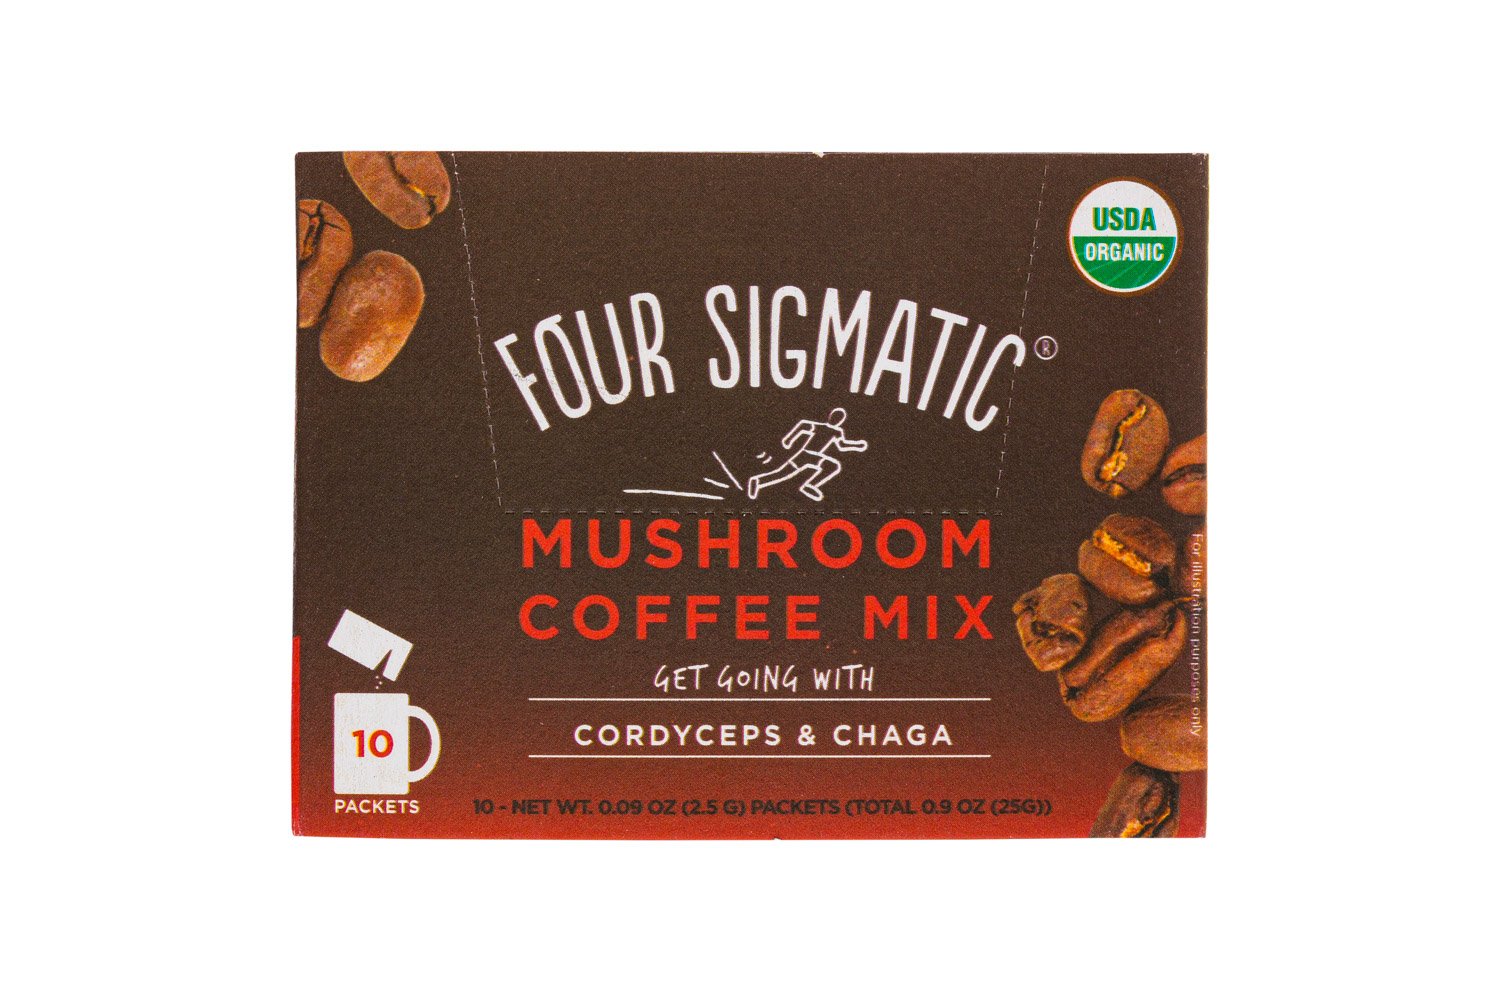 Mushroom Coffee Mix - Cordyceps & Chaga